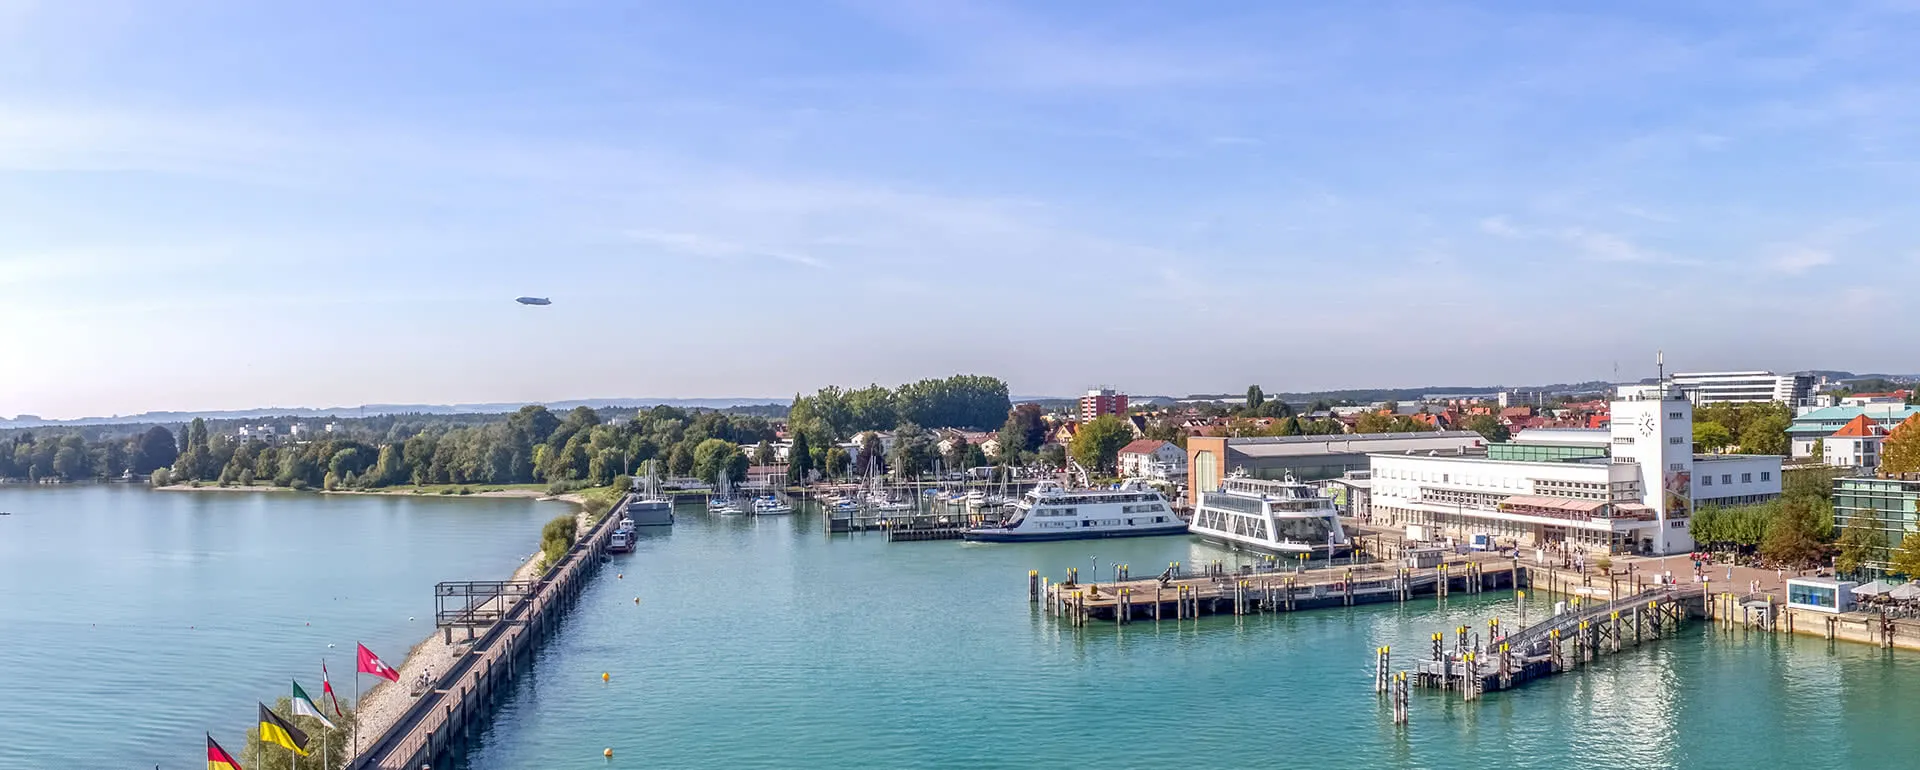 Friedrichshafen panorama image